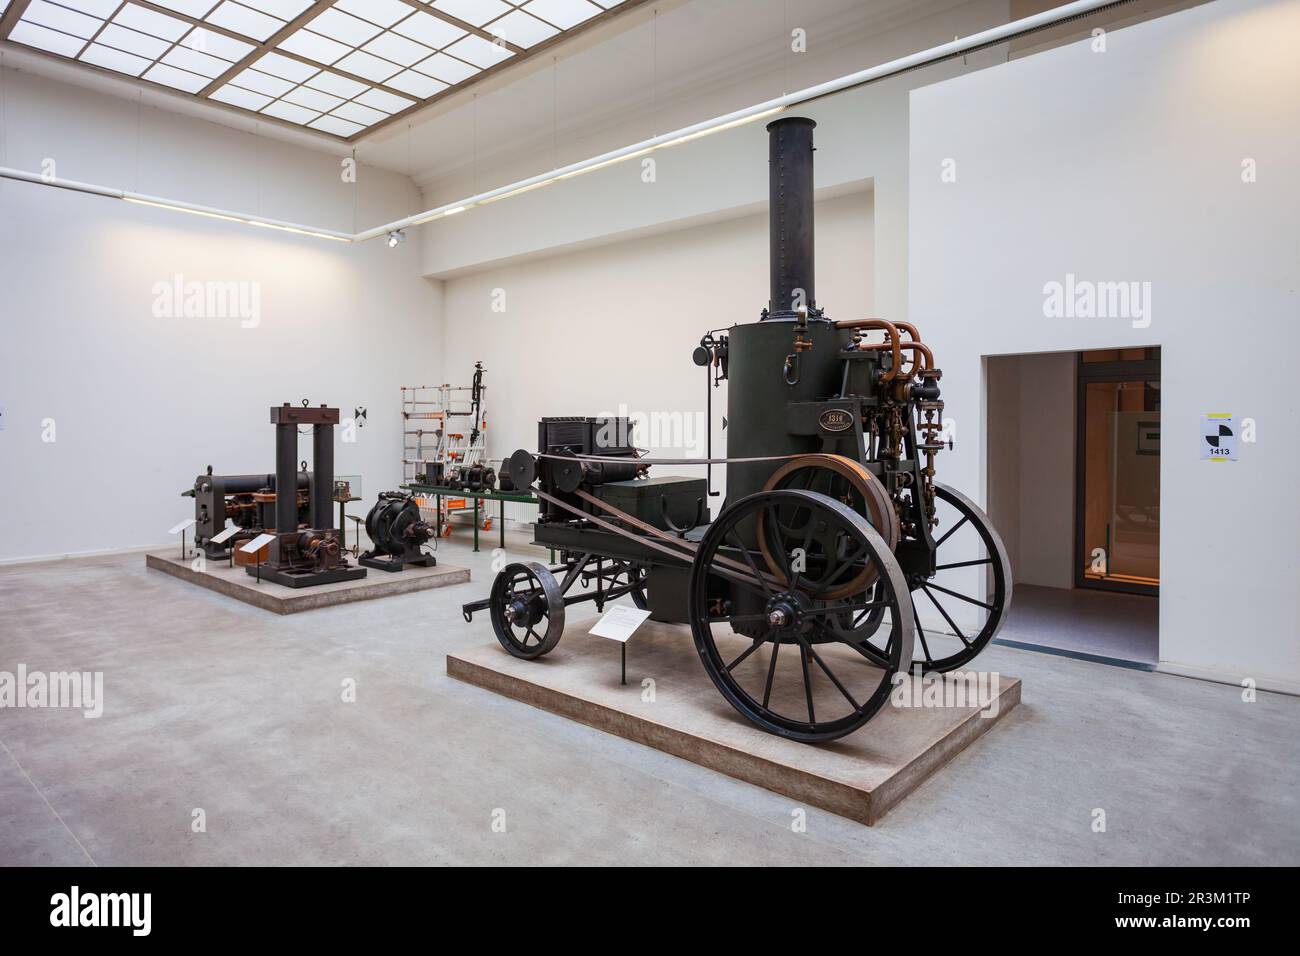 Munich, Allemagne - 07 juillet 2021: Deutsches Museum ou Musée allemand des chefs-d'œuvre de la science et de la technologie à Munich, Allemagne Banque D'Images